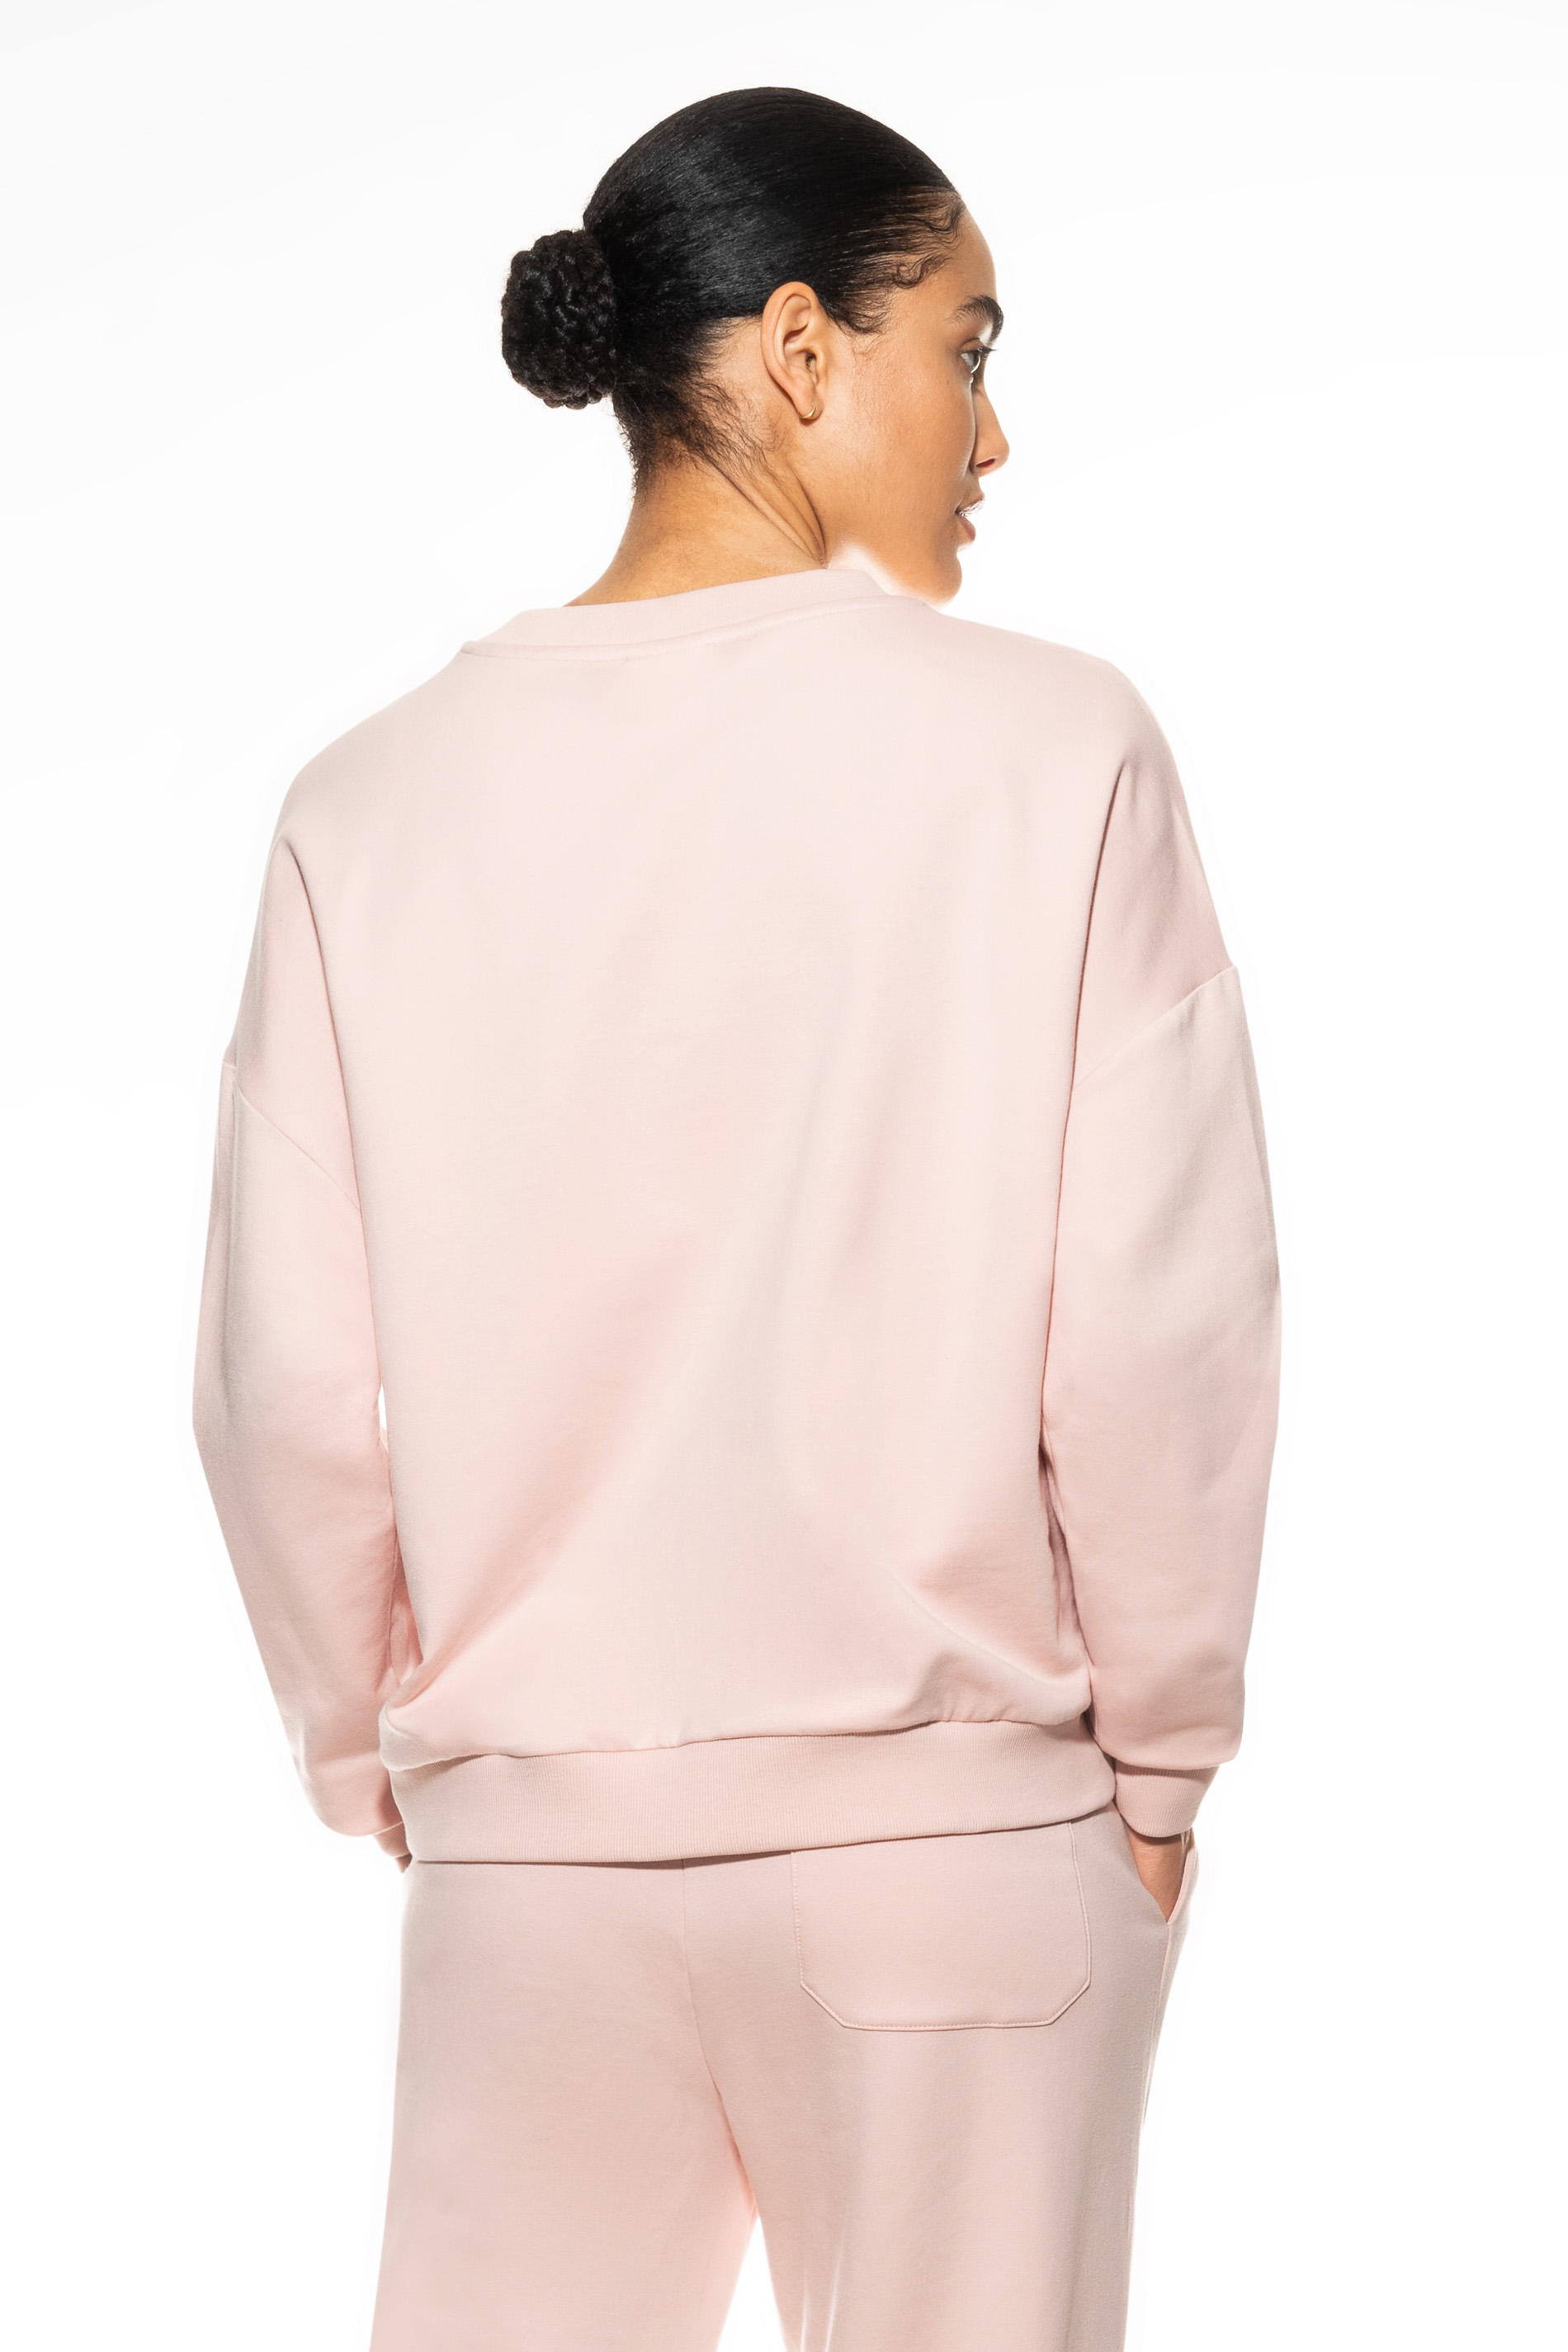 Sweatshirt Serie Rose Rear View | mey®